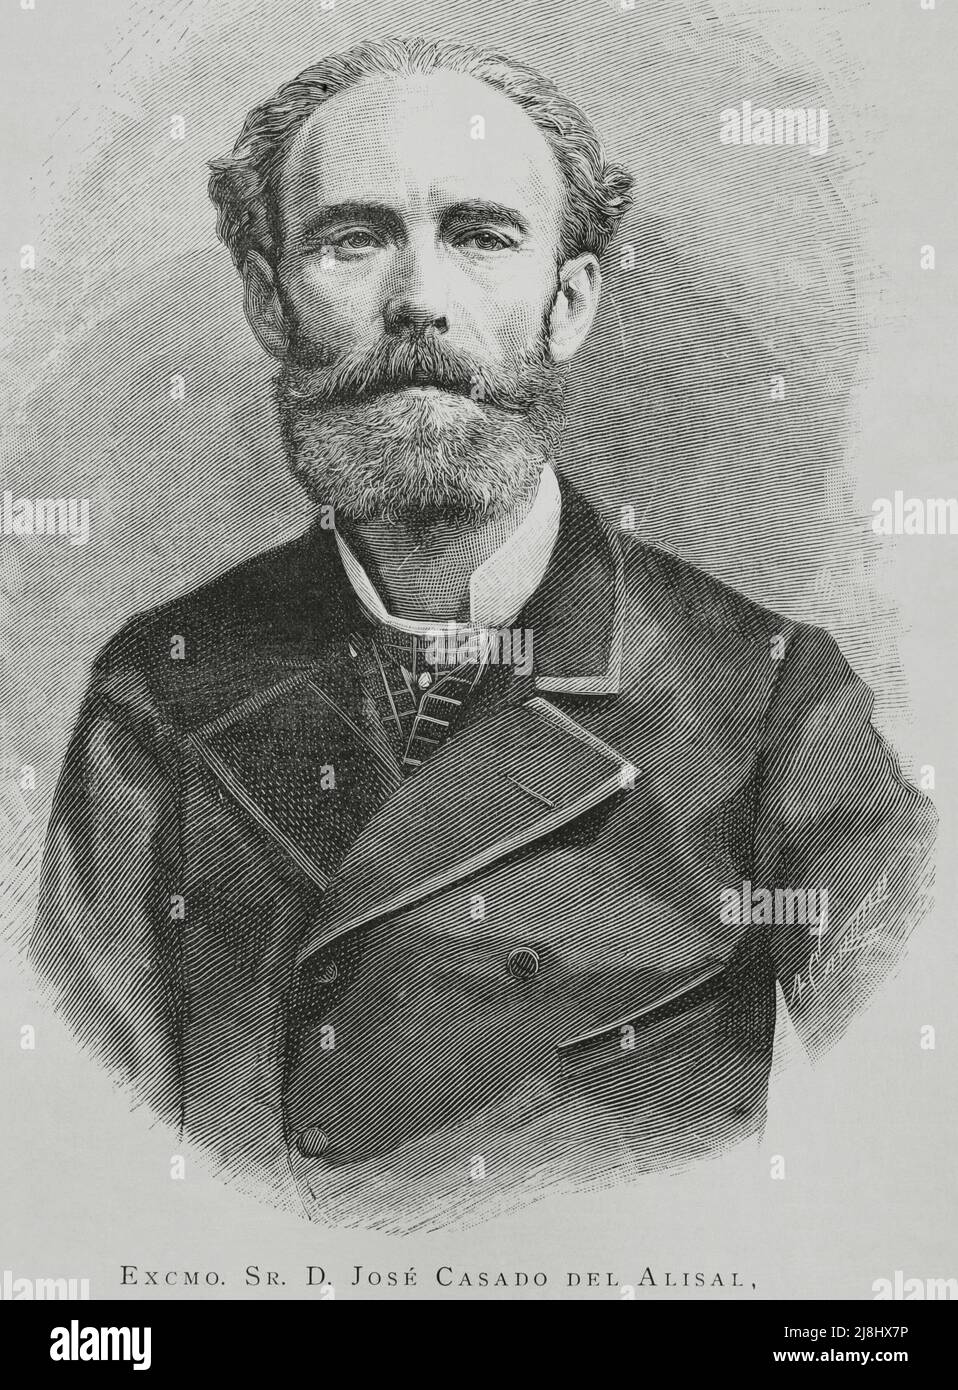 José María Casado del Alisal (1832-1886). Spanish painter. Portrait. Engraving by Arturo Carretero, 1882. Stock Photo